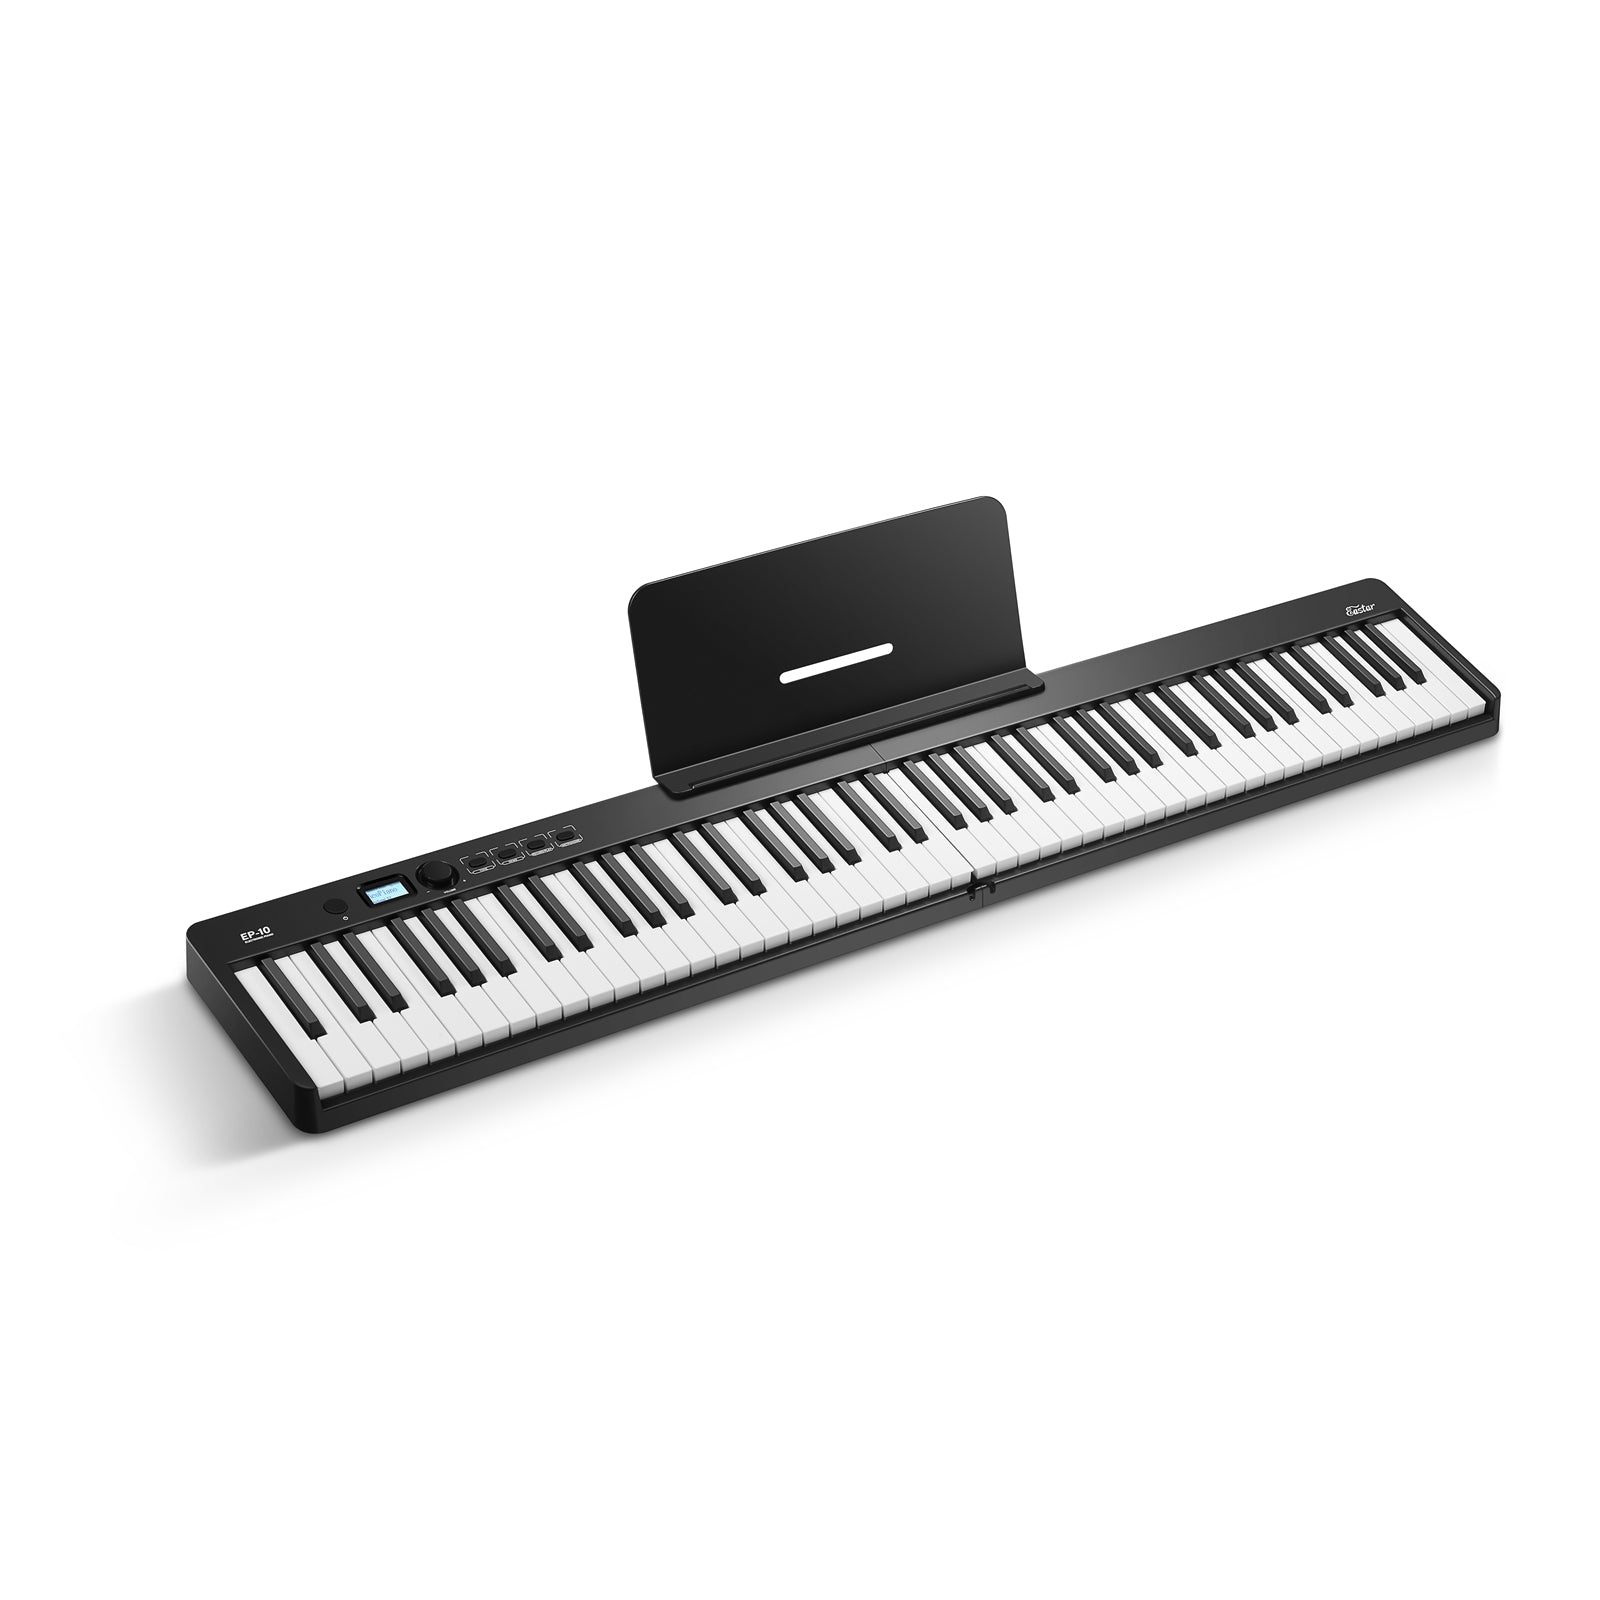 Support de partition de musique pour piano électronique, portable et durable